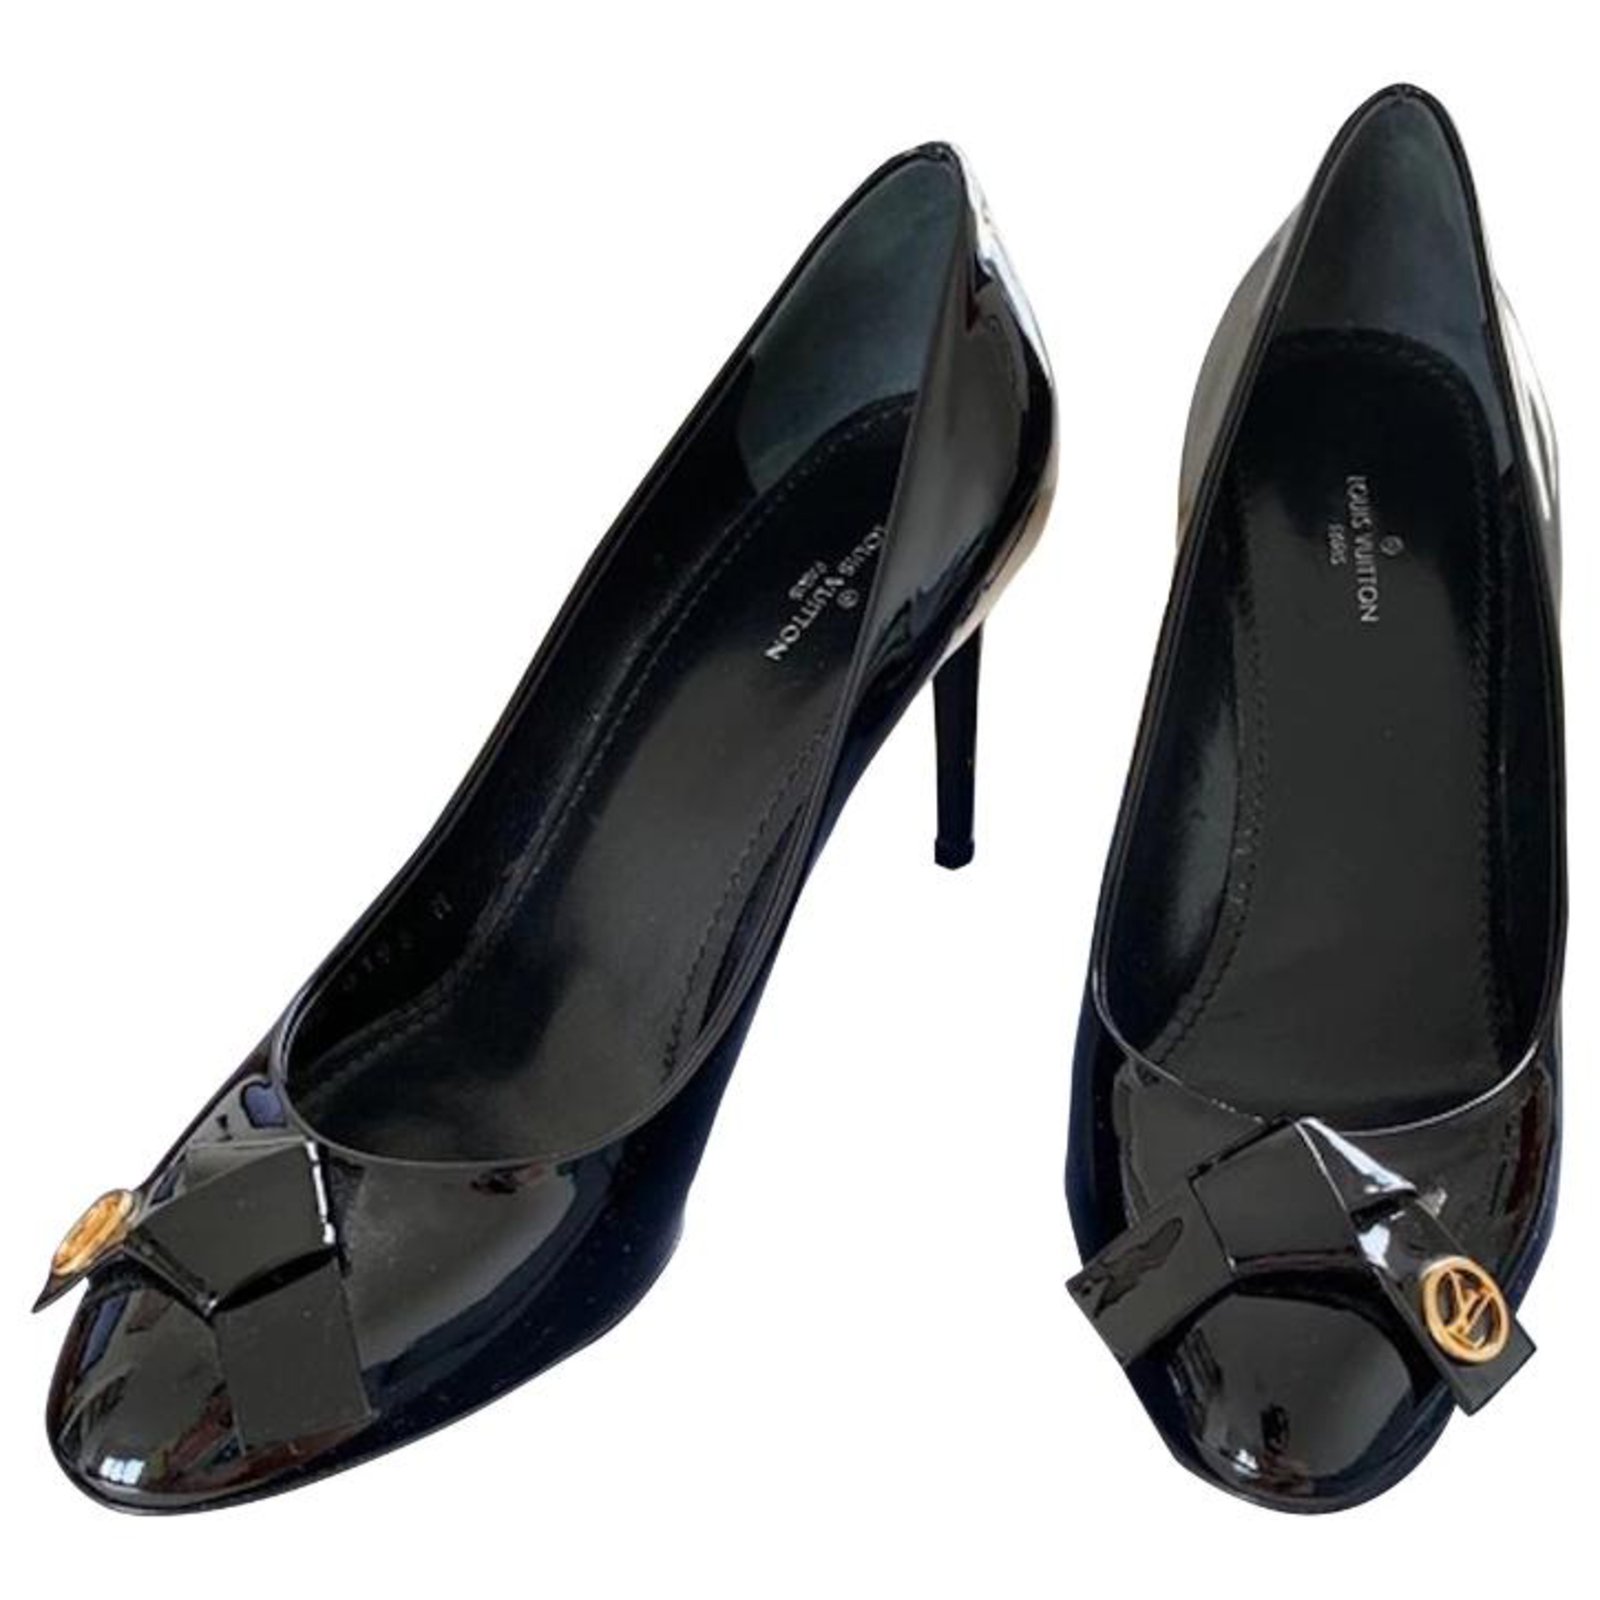 Sandales femme en cuir marron Louis Vuitton chaussures à talons